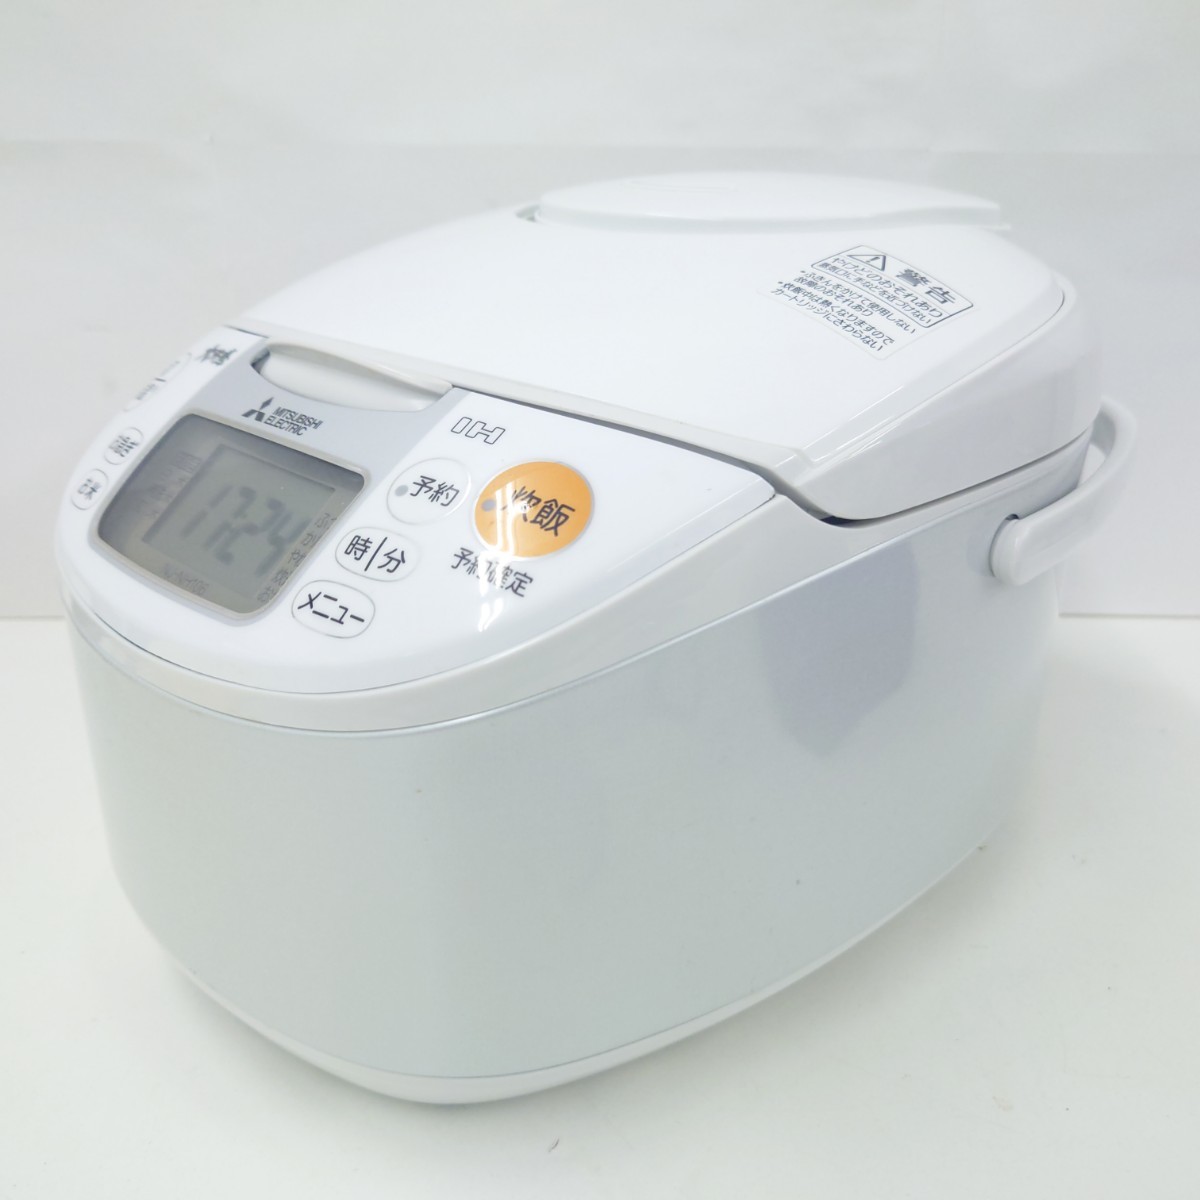 P!MITSUBISHI Mitsubishi IH jar rice cooker NJ-NH106-W white 2018